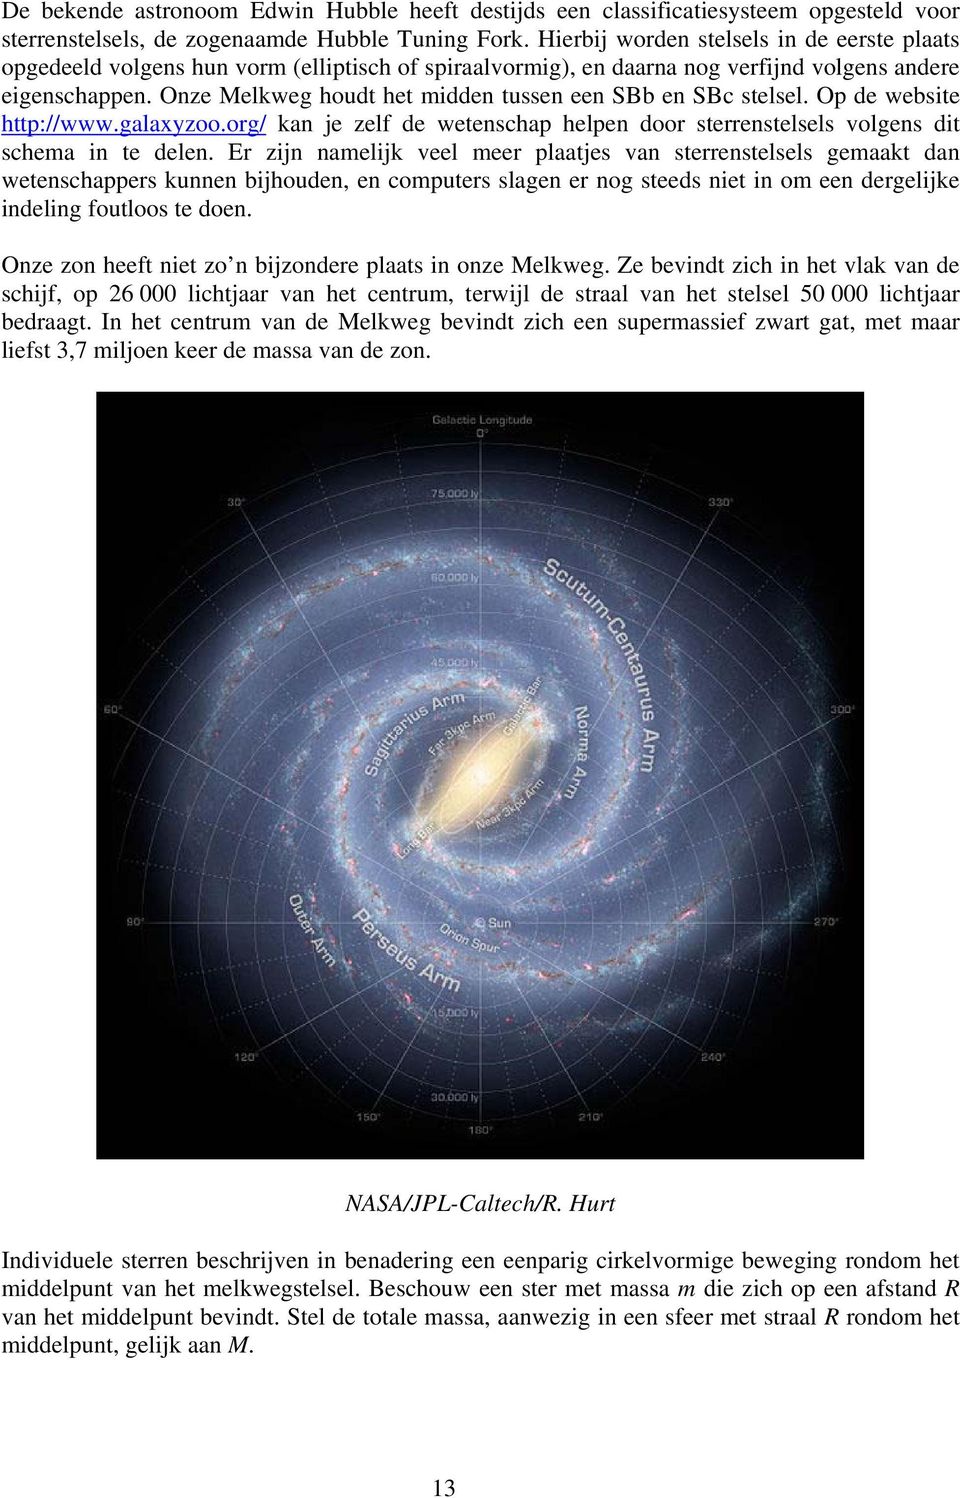 Onze Melkweg houdt het midden tussen een SBb en SBc stelsel. Op de website http://www.galaxyzoo.org/ kan je zelf de wetenschap helpen door sterrenstelsels volgens dit schema in te delen.